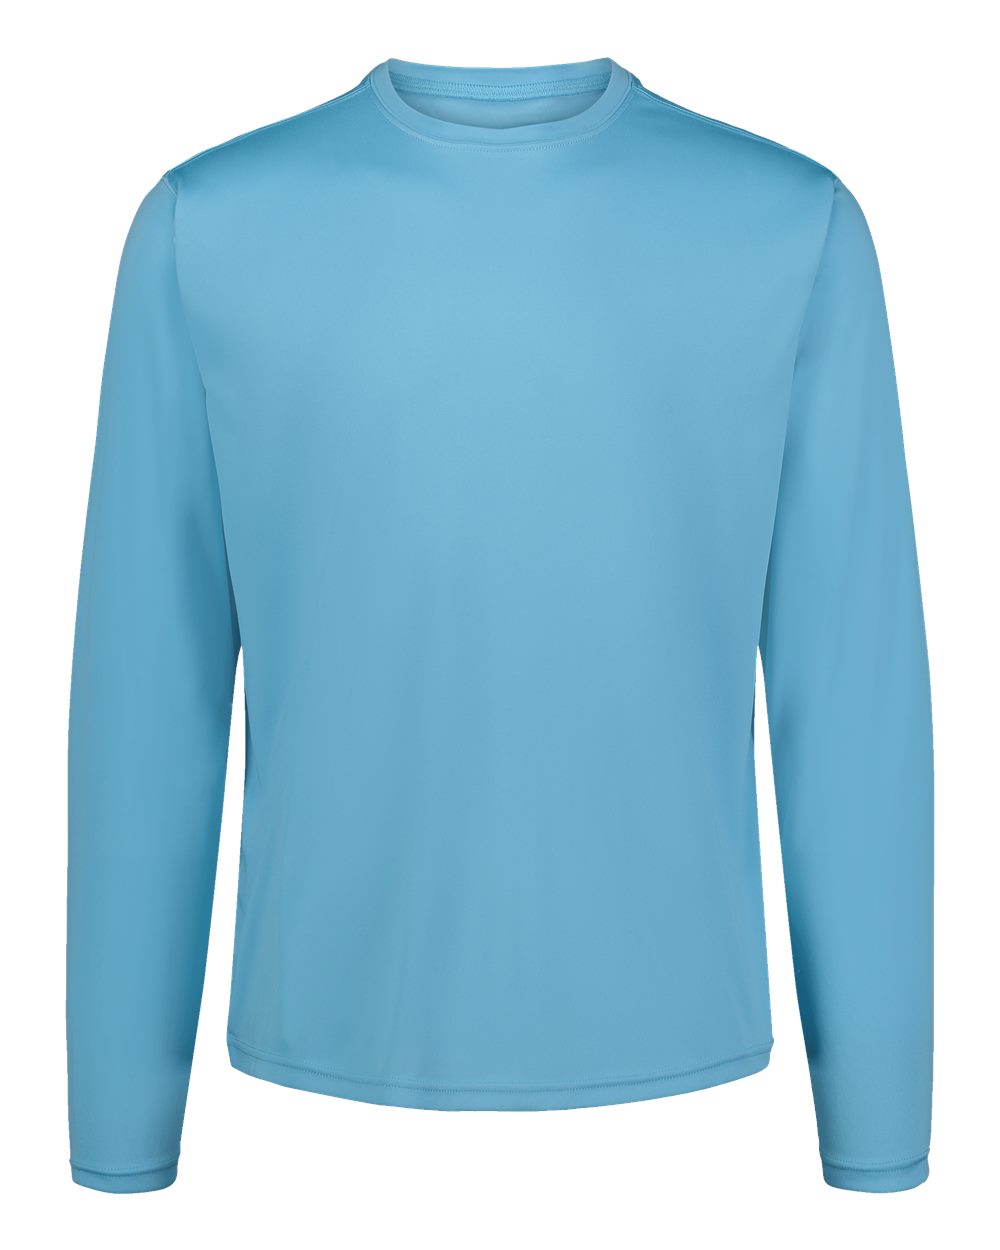 MV Sport 19456 - Sunproof® Long Sleeve T-Shirt